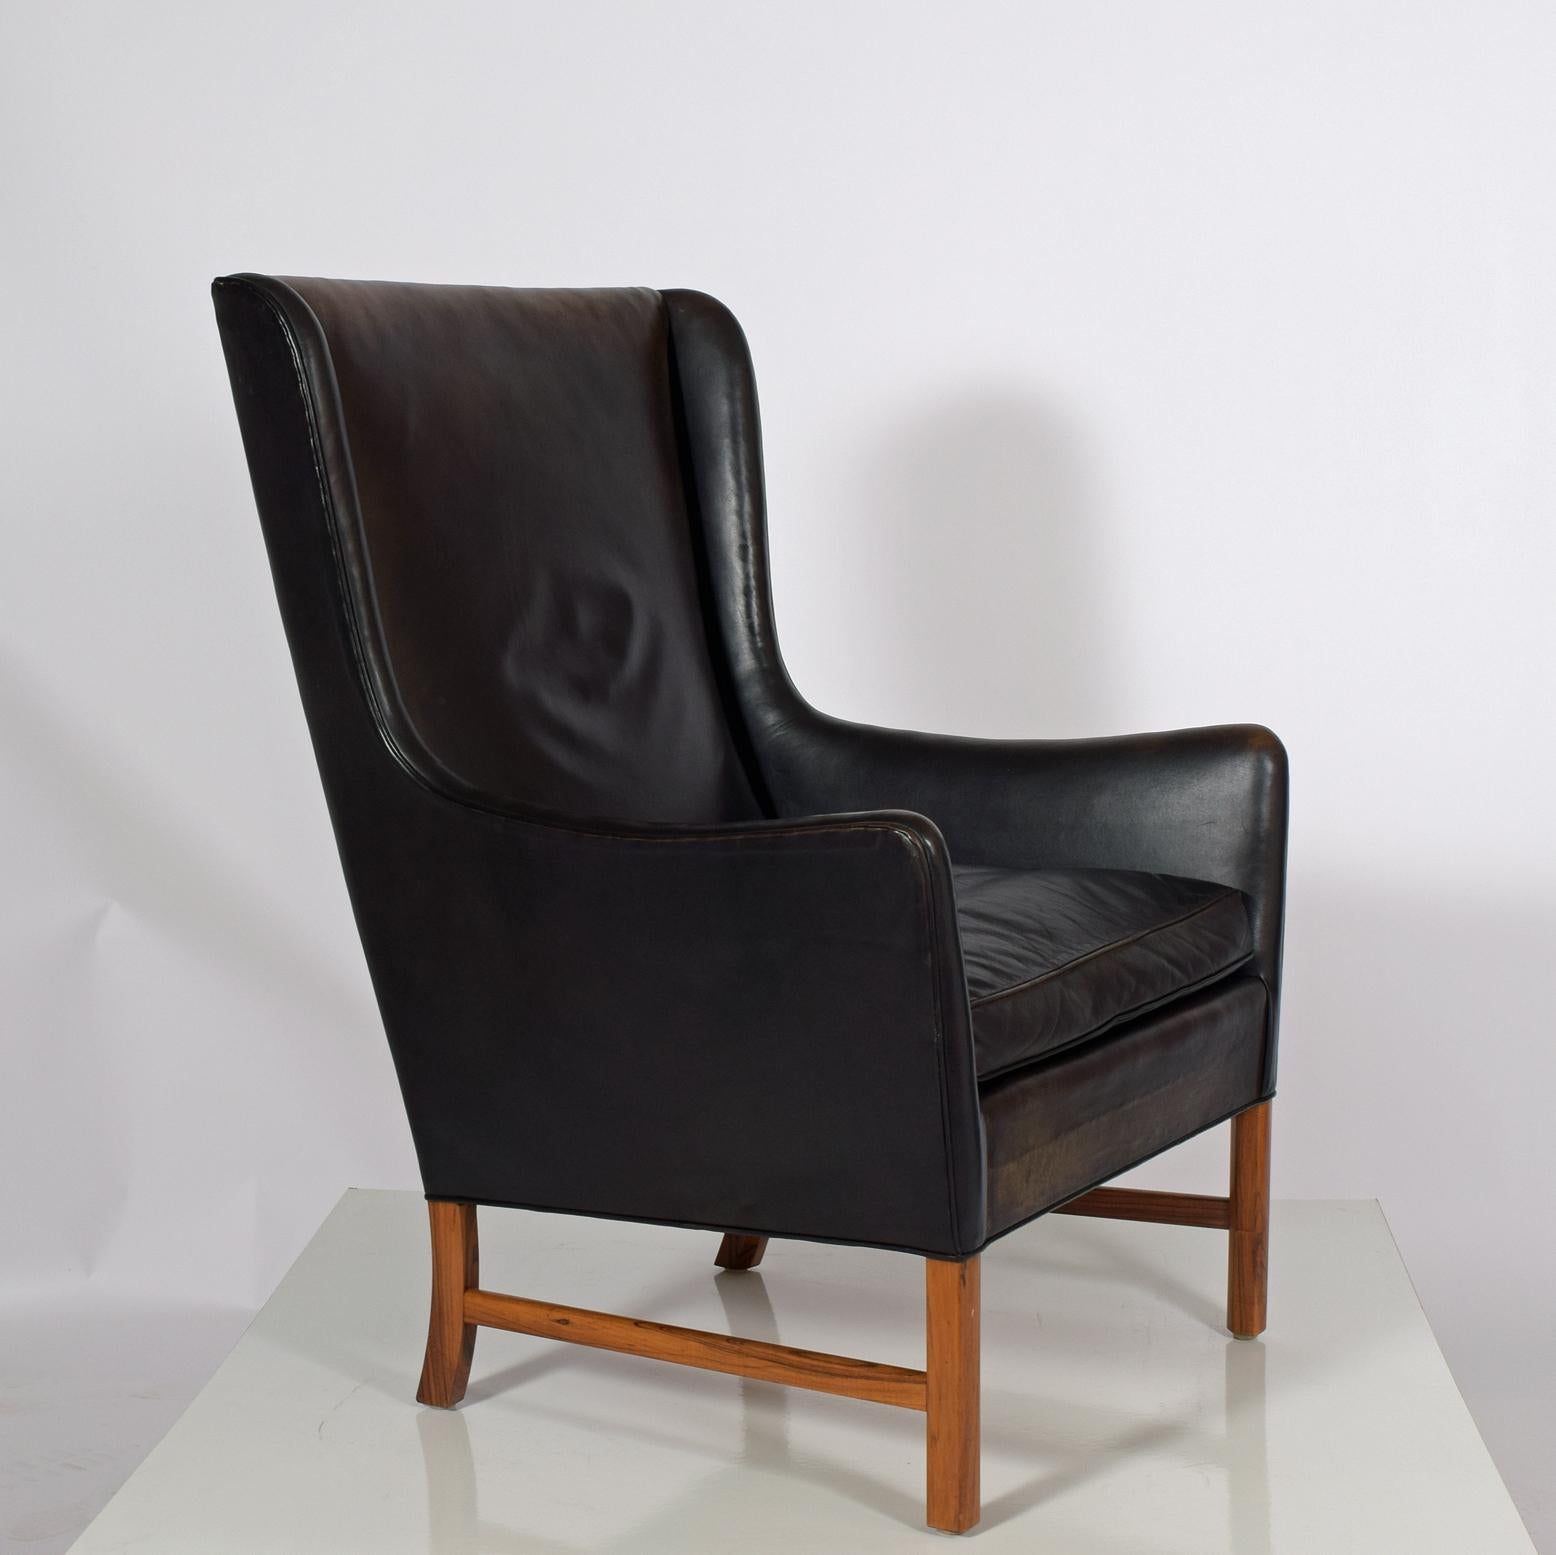 Cuir noir, palissandre du Brésil, fauteuil élégant conçu par Ole Wanscher pour A.J. Cuir original Iversen.